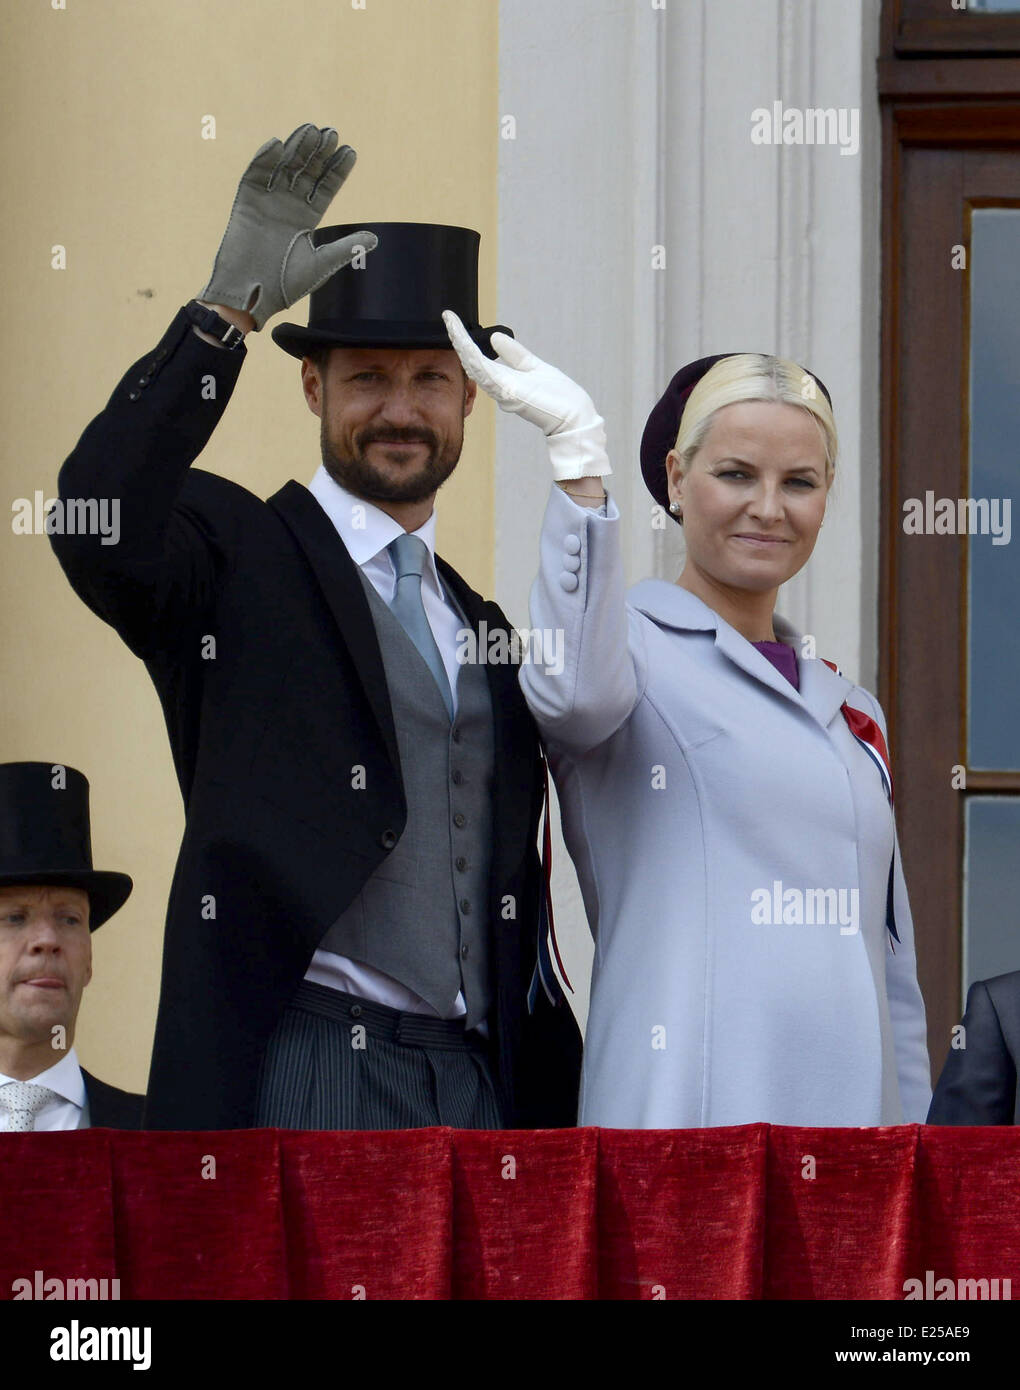 El príncipe heredero Haakon y la princesa heredera Mette-Marit, el Príncipe Sverre Magnus, la Princesa Ingrid Alexandra, la Reina Sonja y el Rey Harald saludan desde el balcón del Palacio Real de Oslo, Noruega el 17 de mayo de 2013, el día del aniversario nacional noruego. Presentando: El Príncipe Heredero Haakon, la princesa heredera Mette-Marit Dónde: Oslo, Noruega cuando: 17 de mayo de 2013 Foto de stock